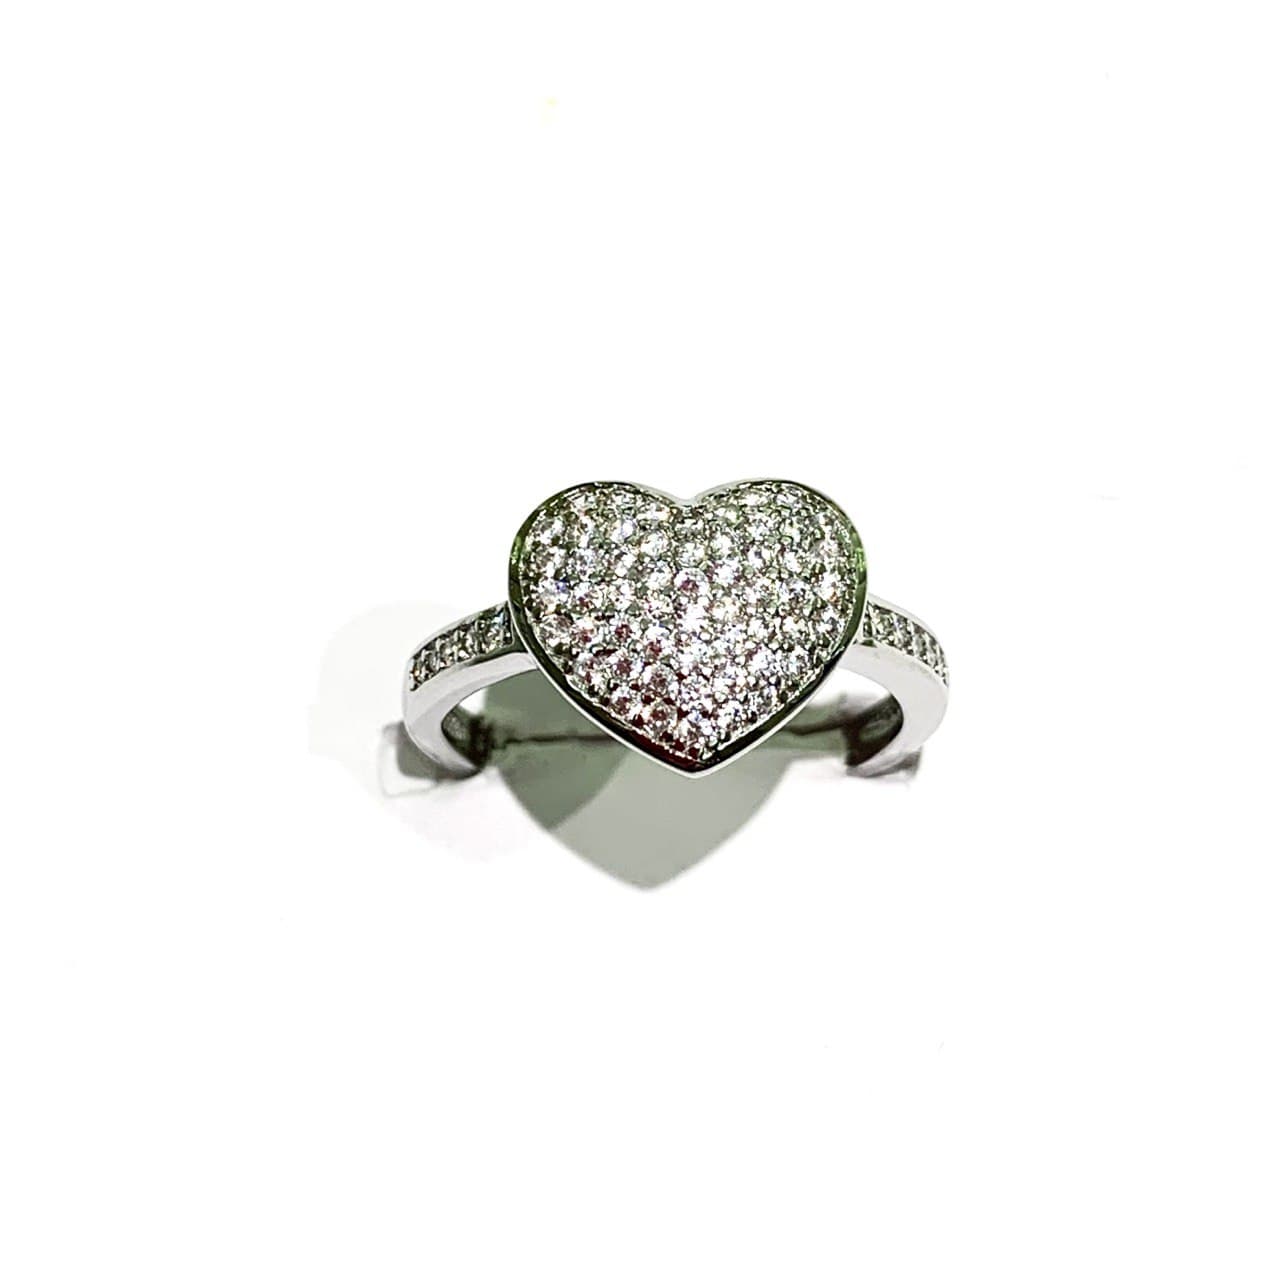 Anello in argento con cuore centrale e gambo ricoperto da zirconi.  Dimensioni cuore 1,1 cm.  Larghezza anello 0,2 cm.  Misura regolabile da 14 a 17.